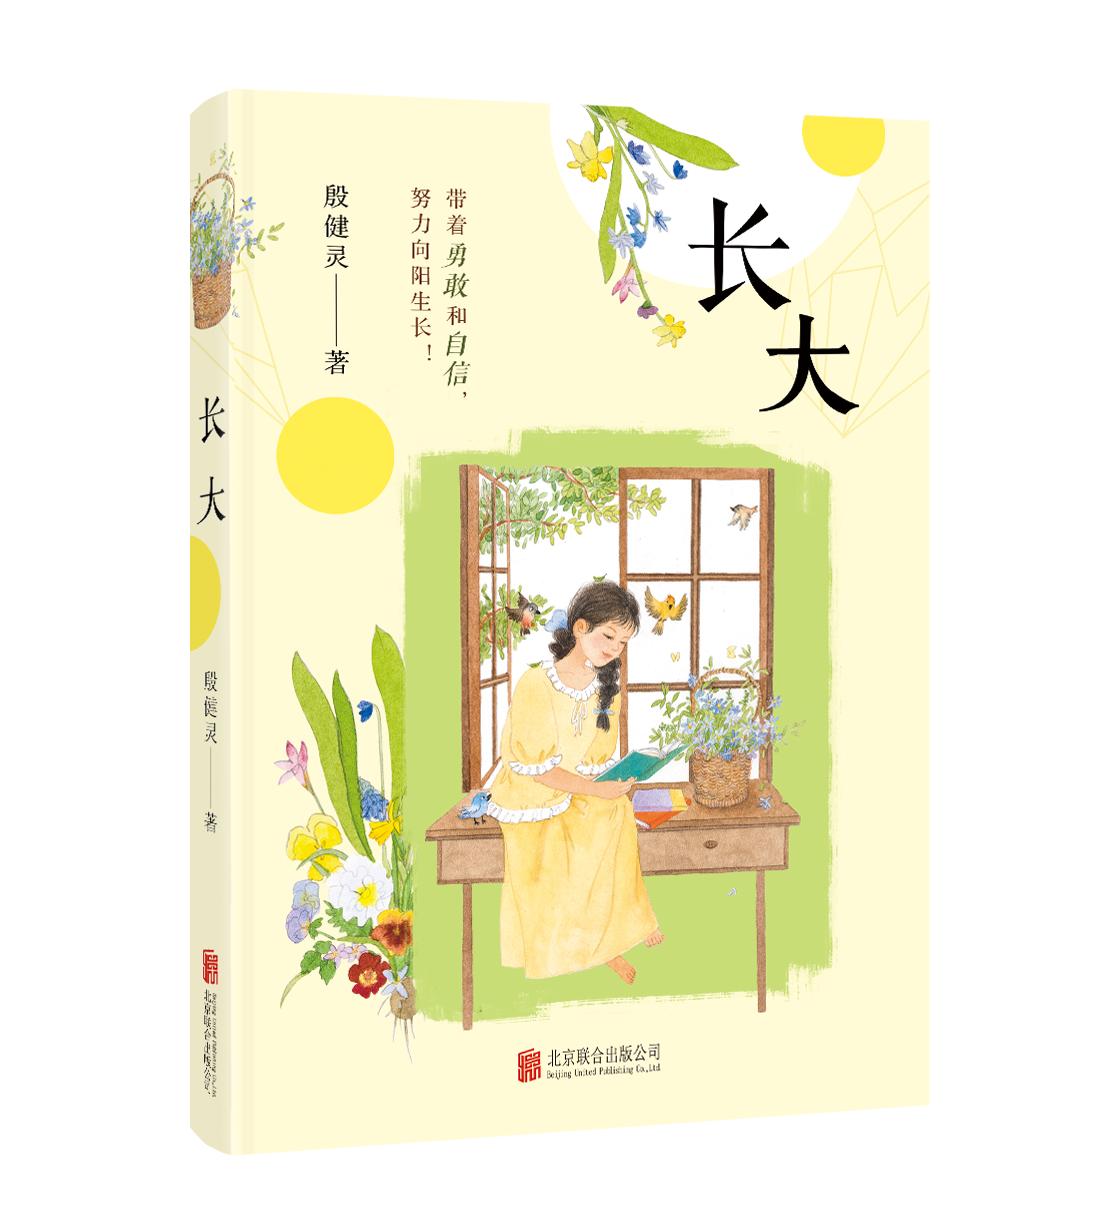 殷健灵儿童长篇小说《长大》出版